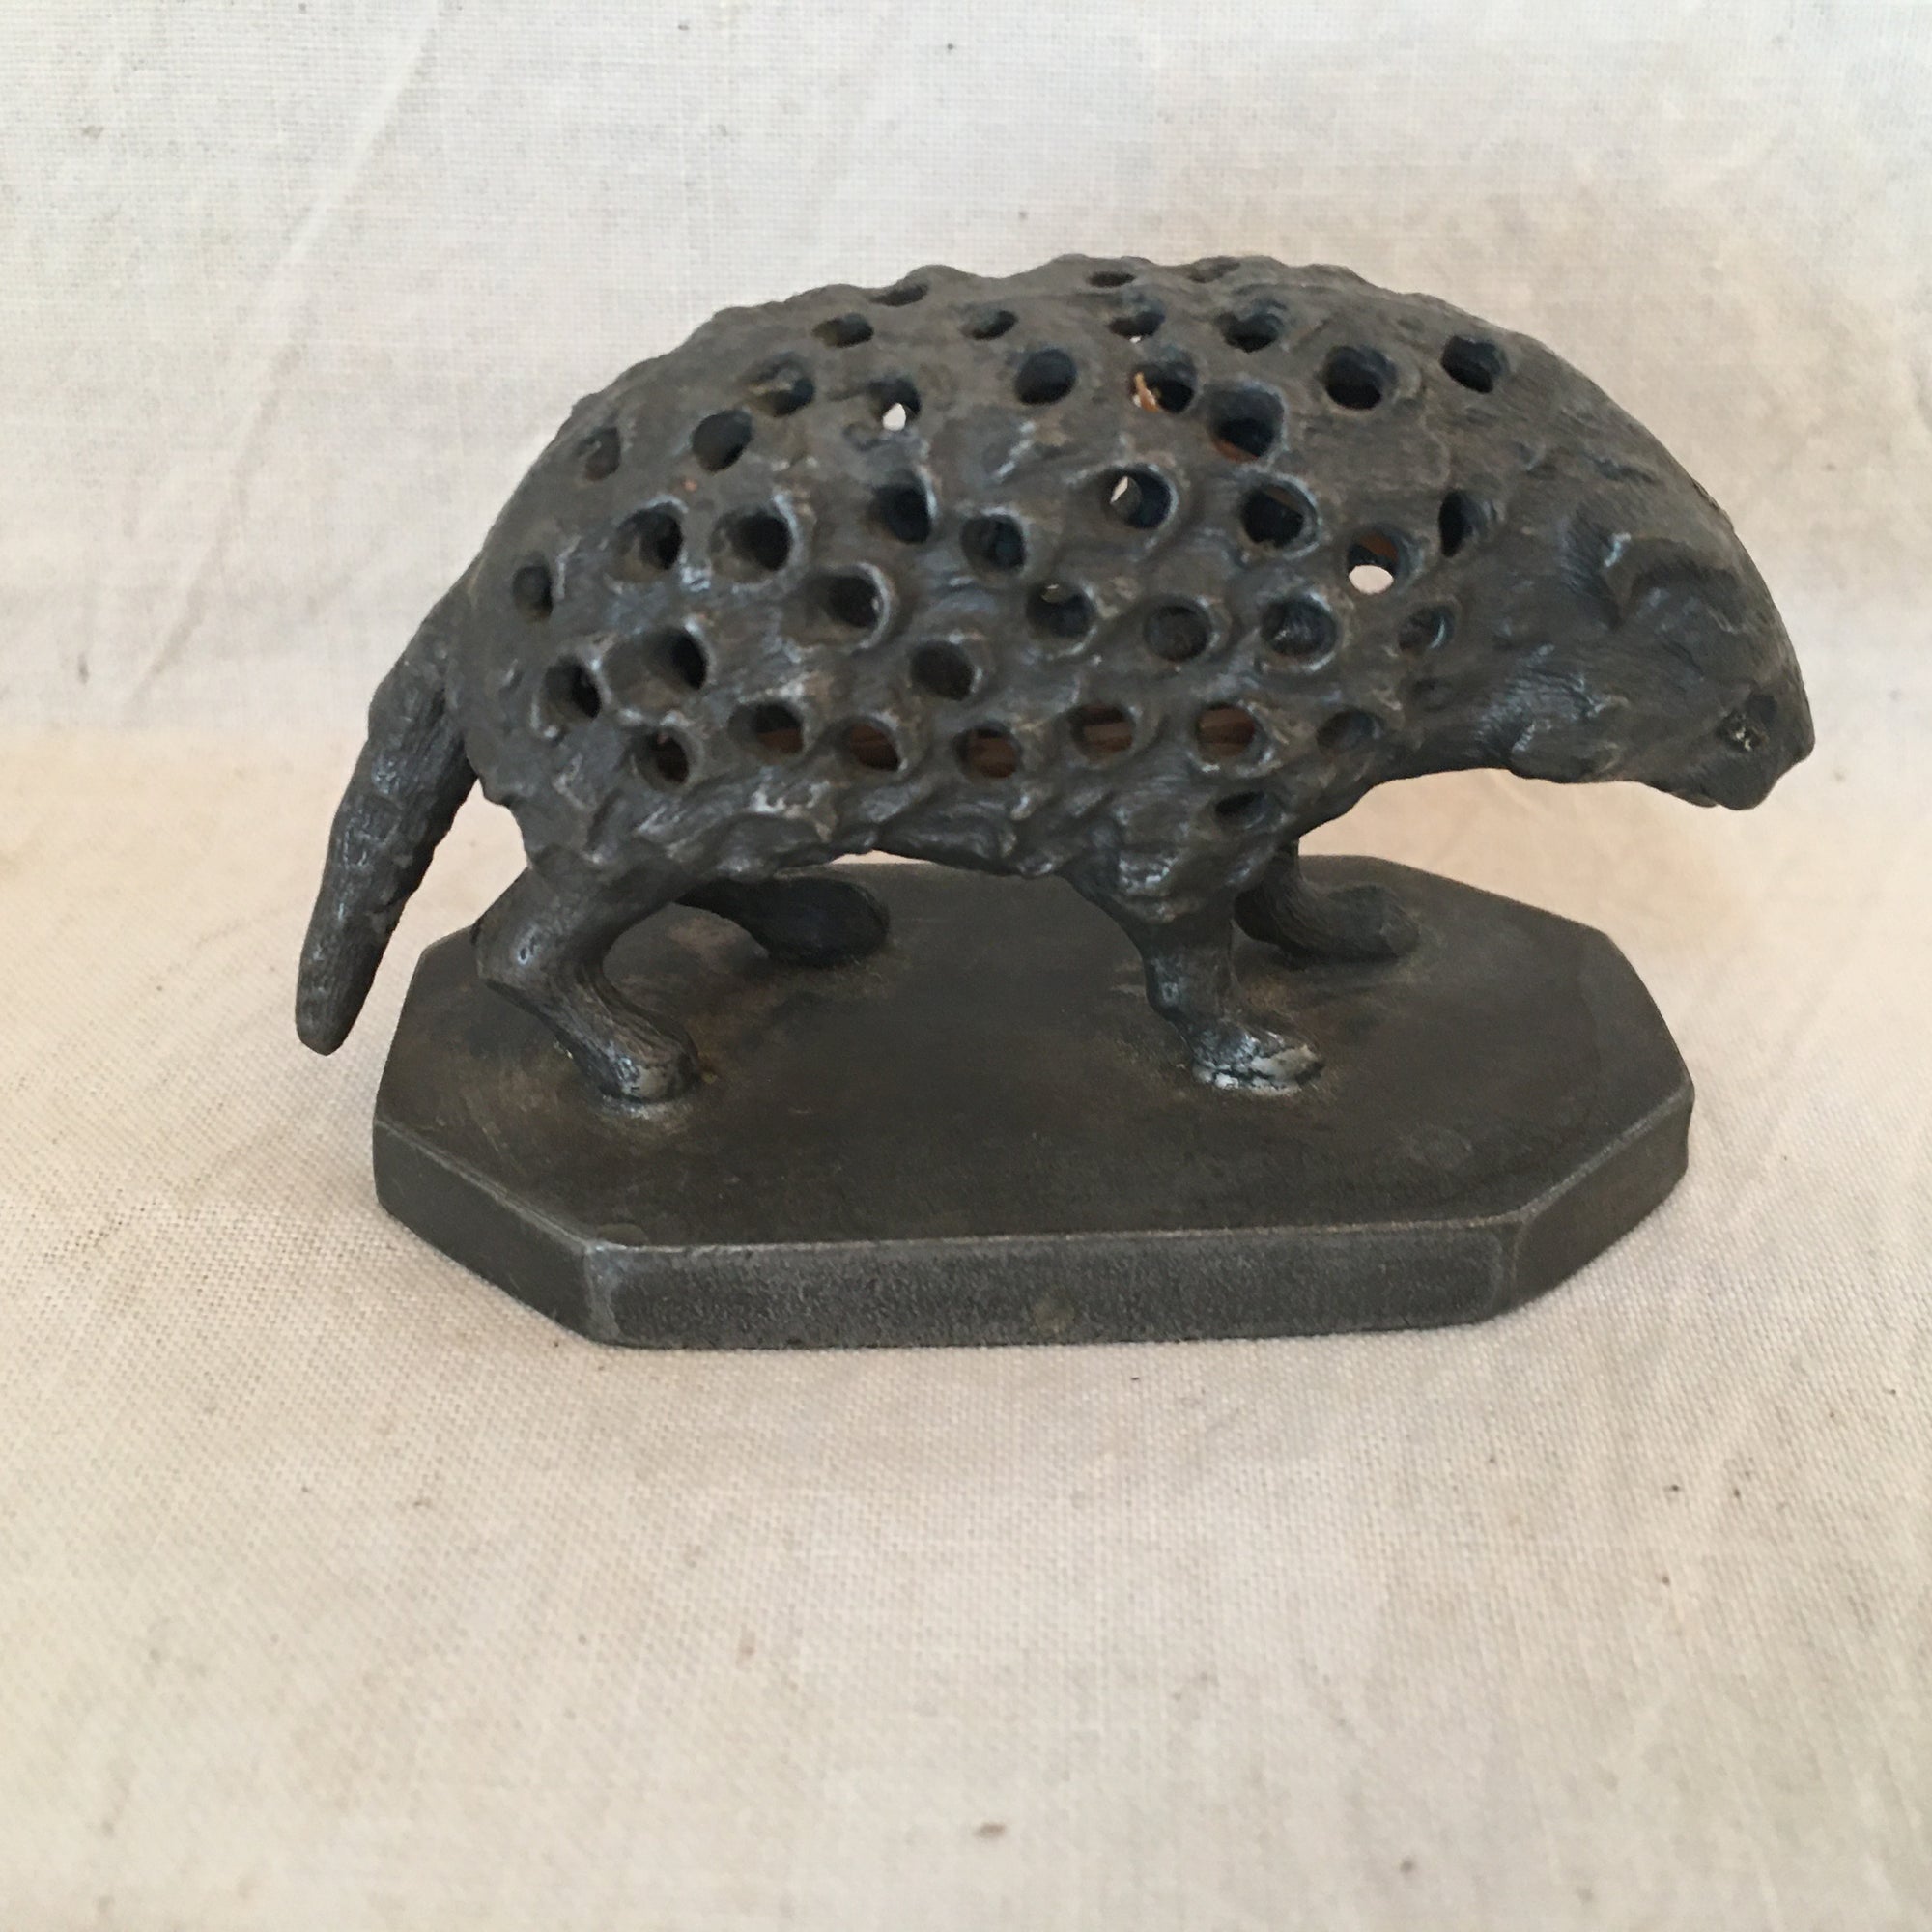 Edwardian Era Silver Plate Pin Holder, Shape of Porcupine/Hedgehog